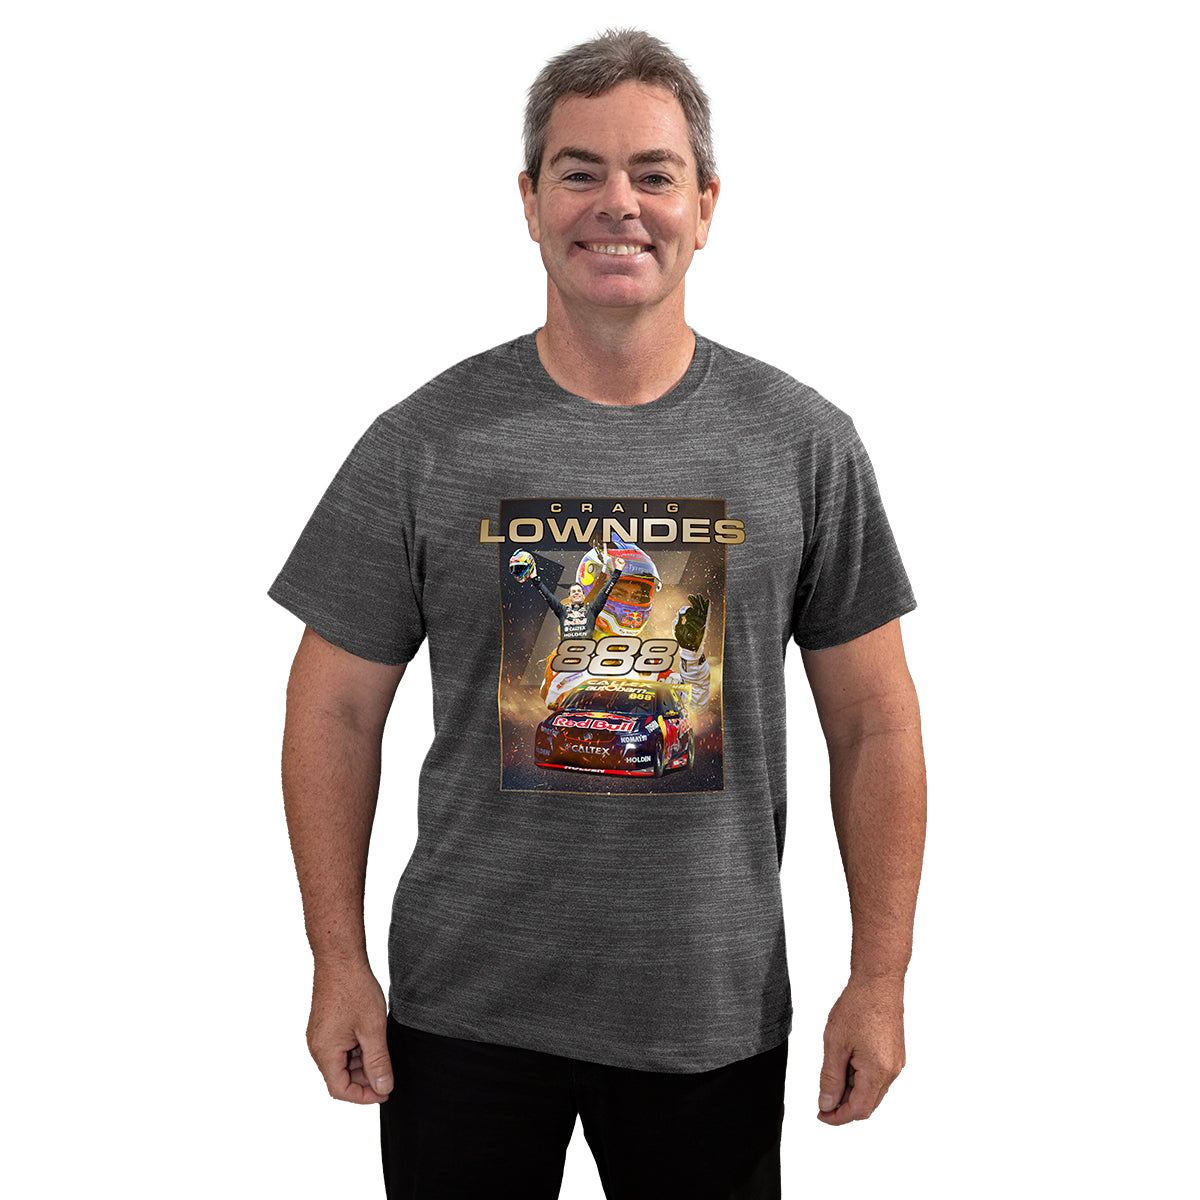 Craig Lowndes Achievement Series T-Shirt Men's